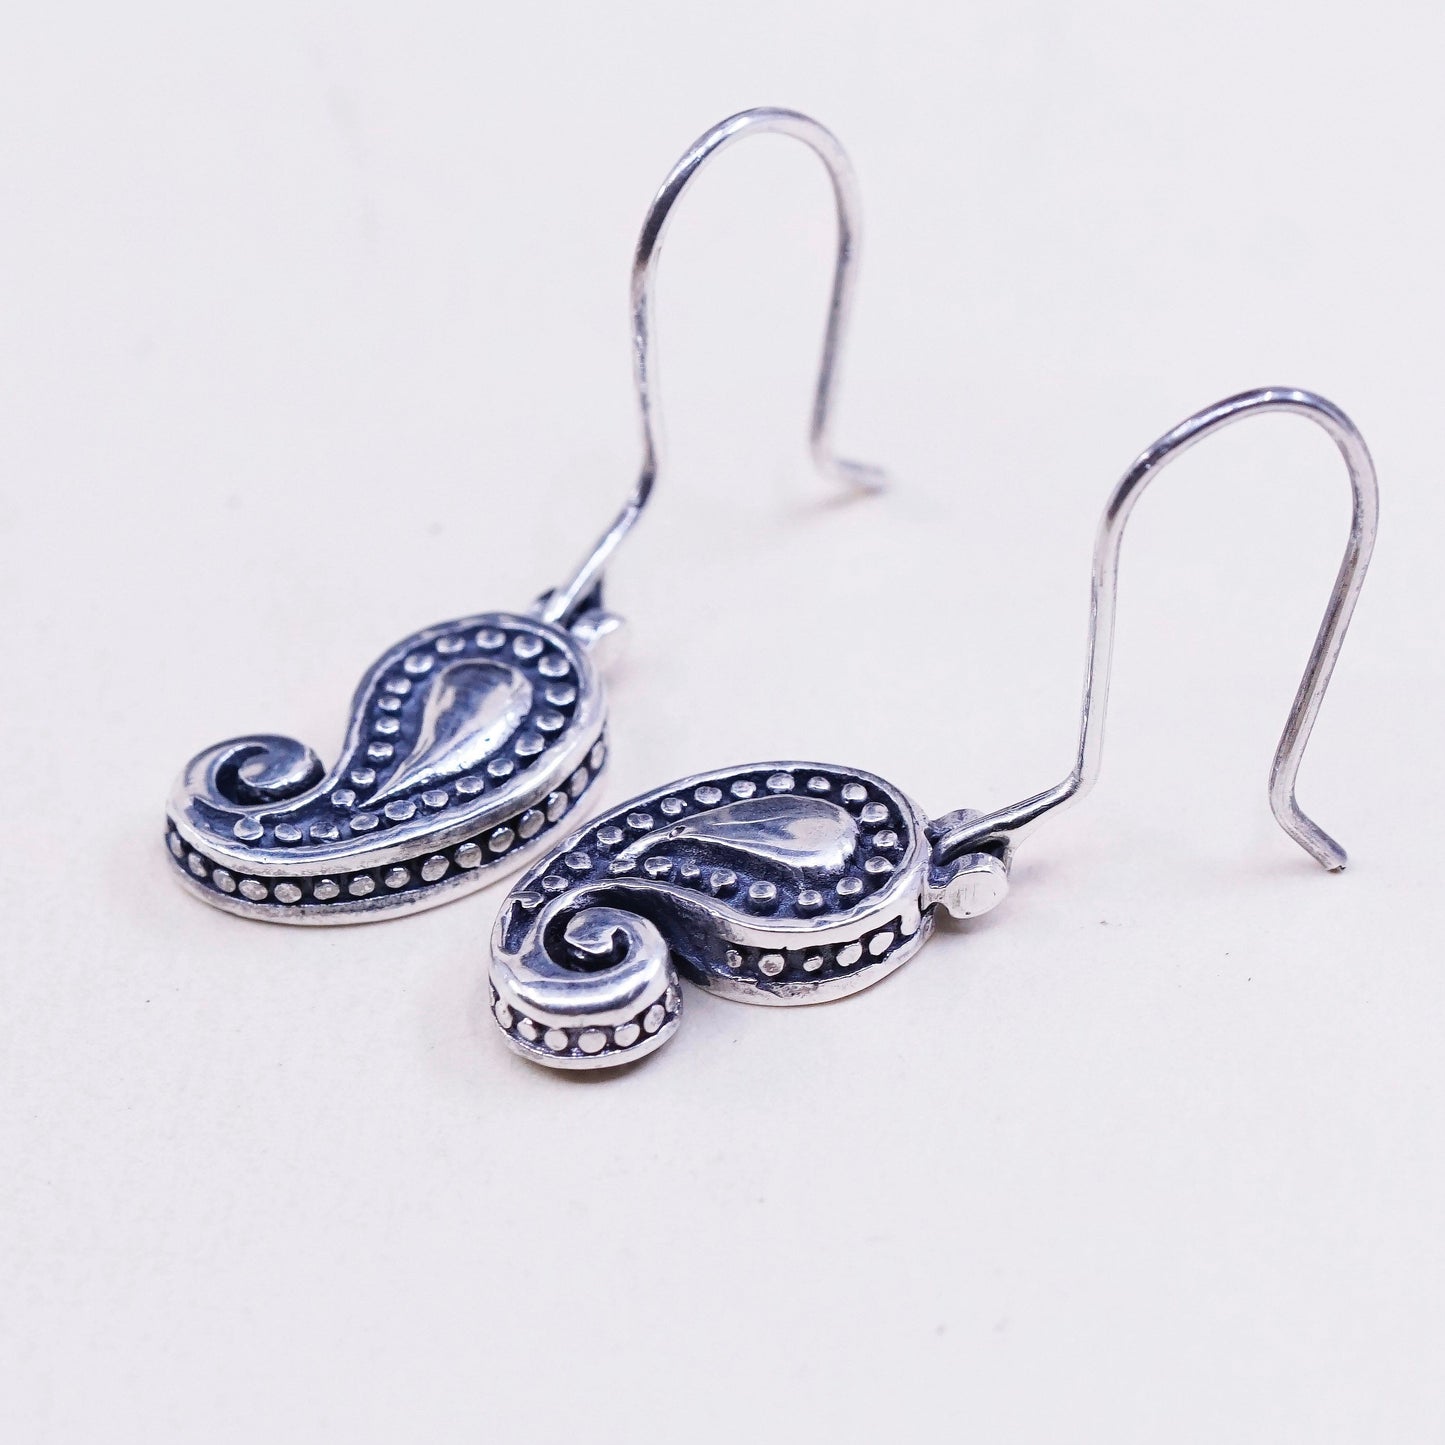 Vintage Sterling silver handmade Bali earrings, Indian 925 swirl pattern oval